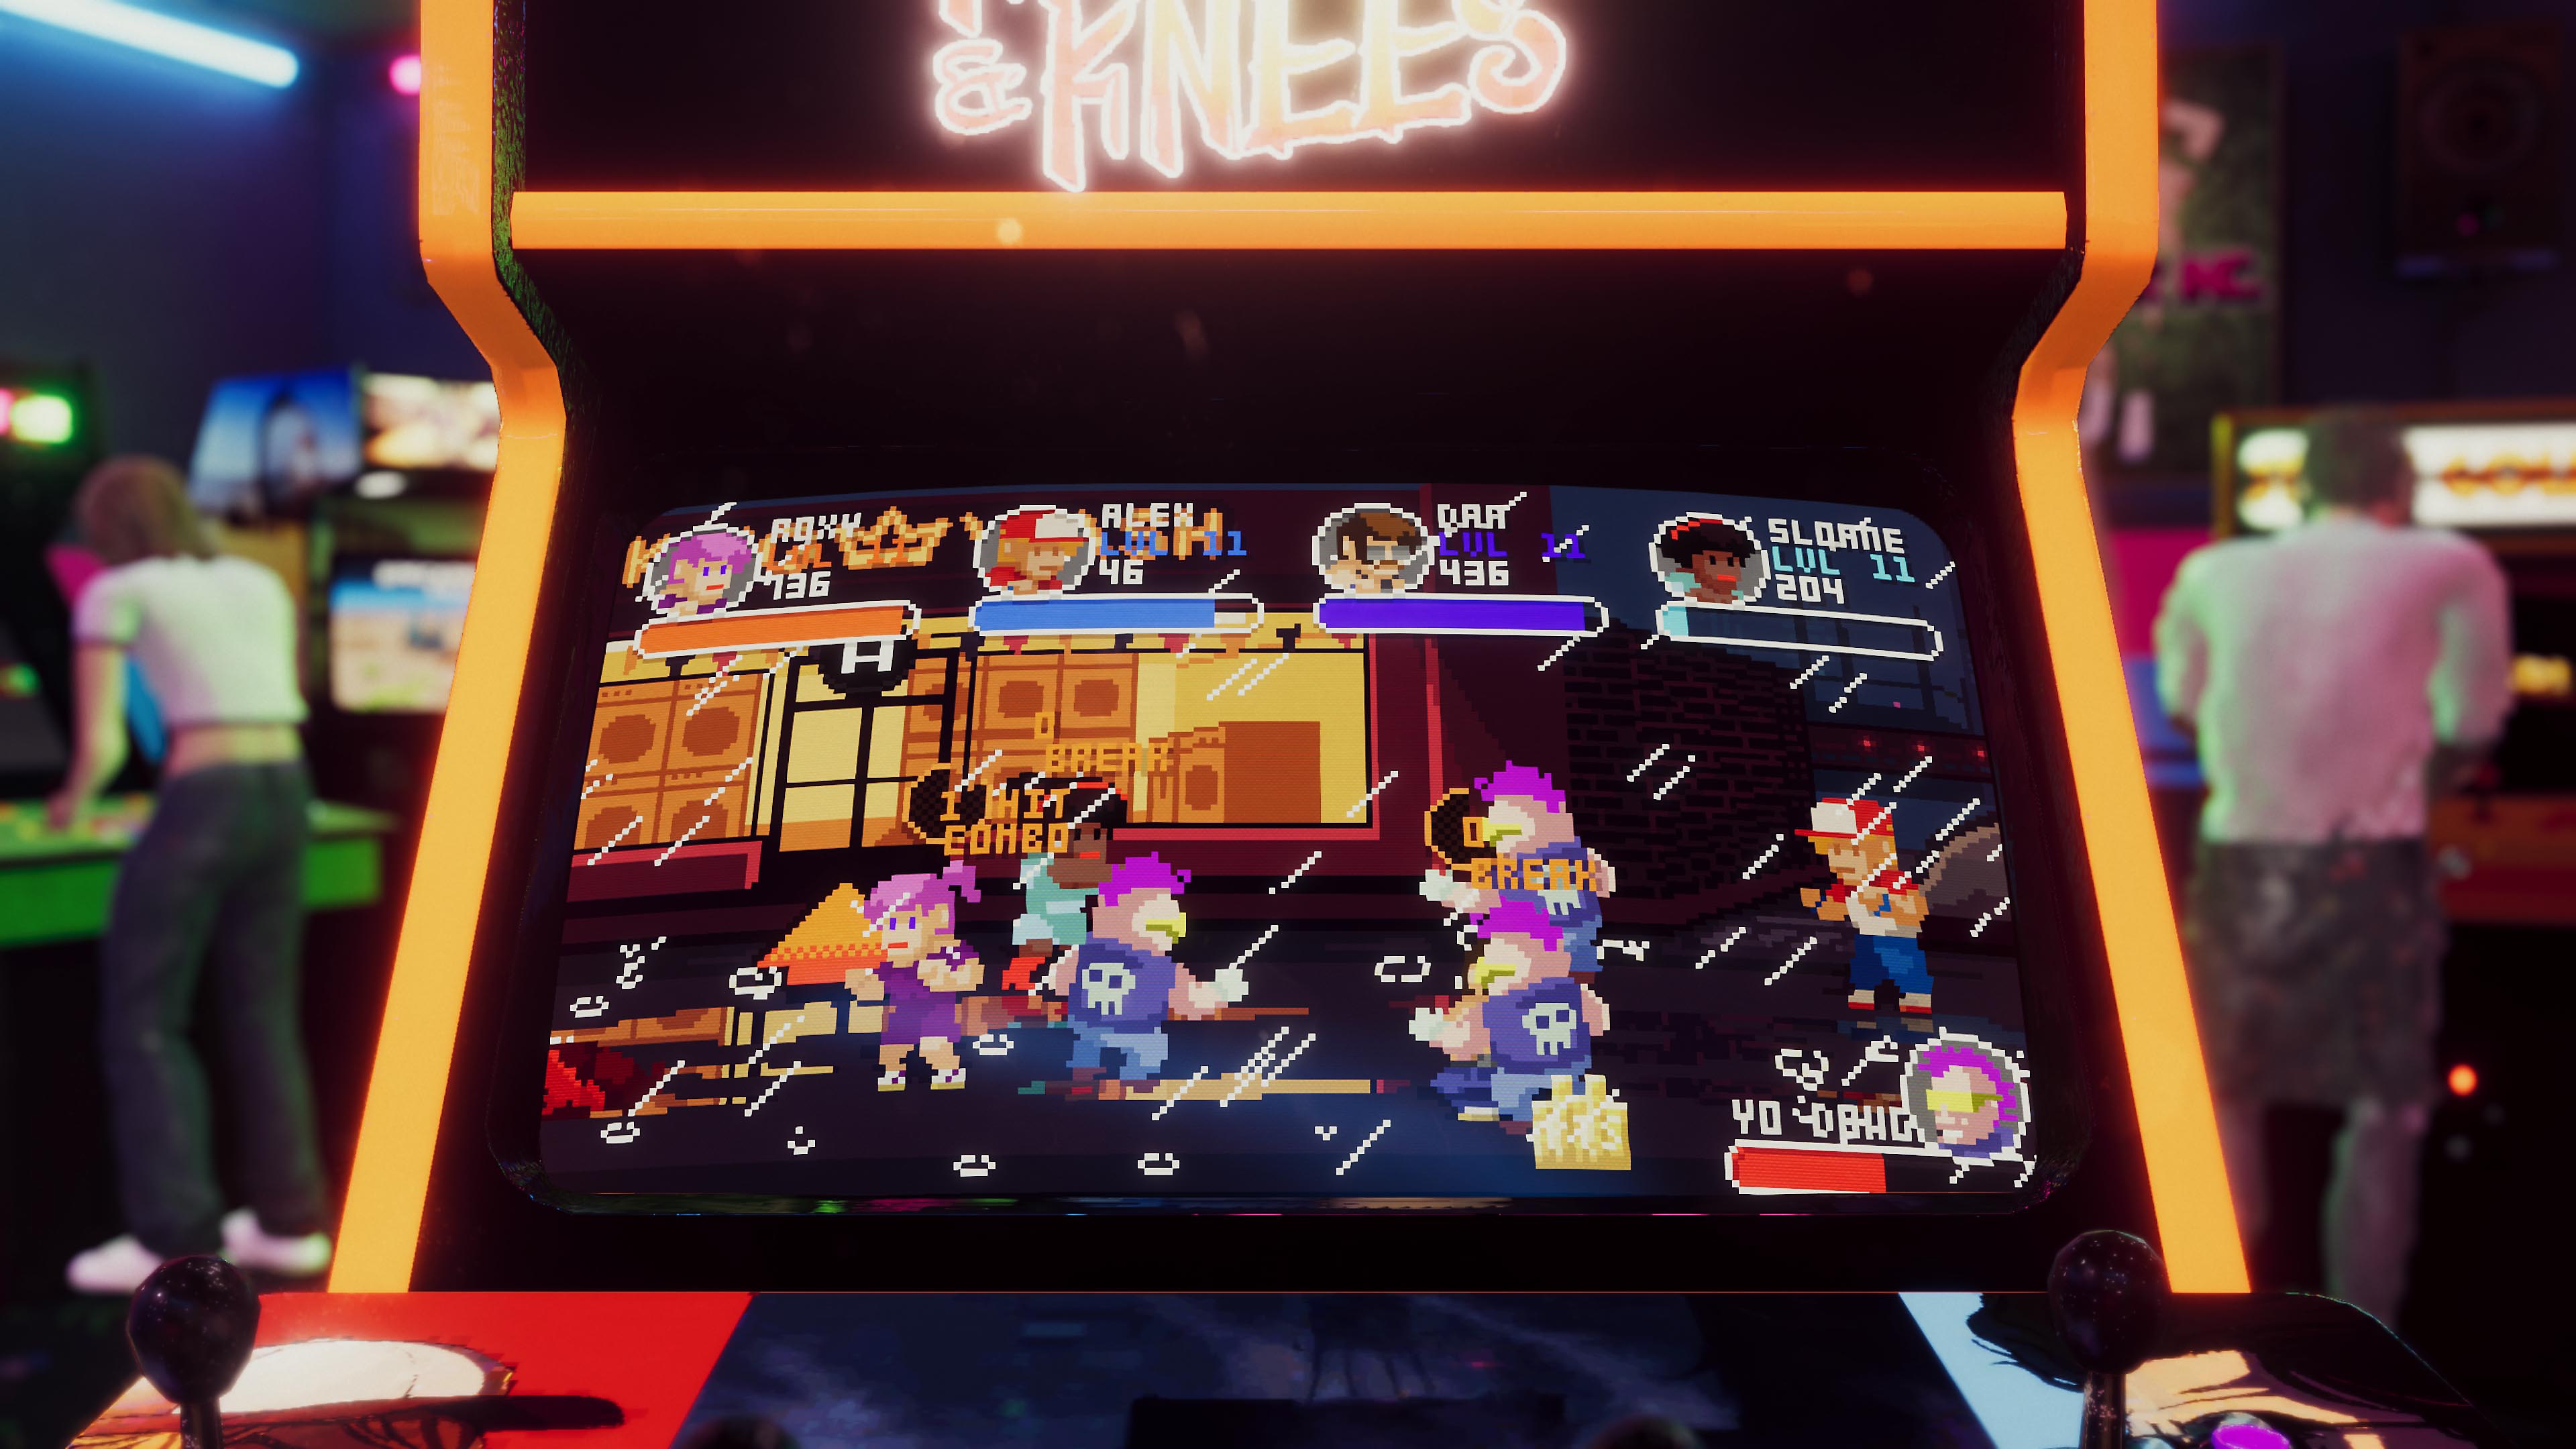 Arcade Paradise - captura de tela mostrando máquina de arcade com jogo retrô